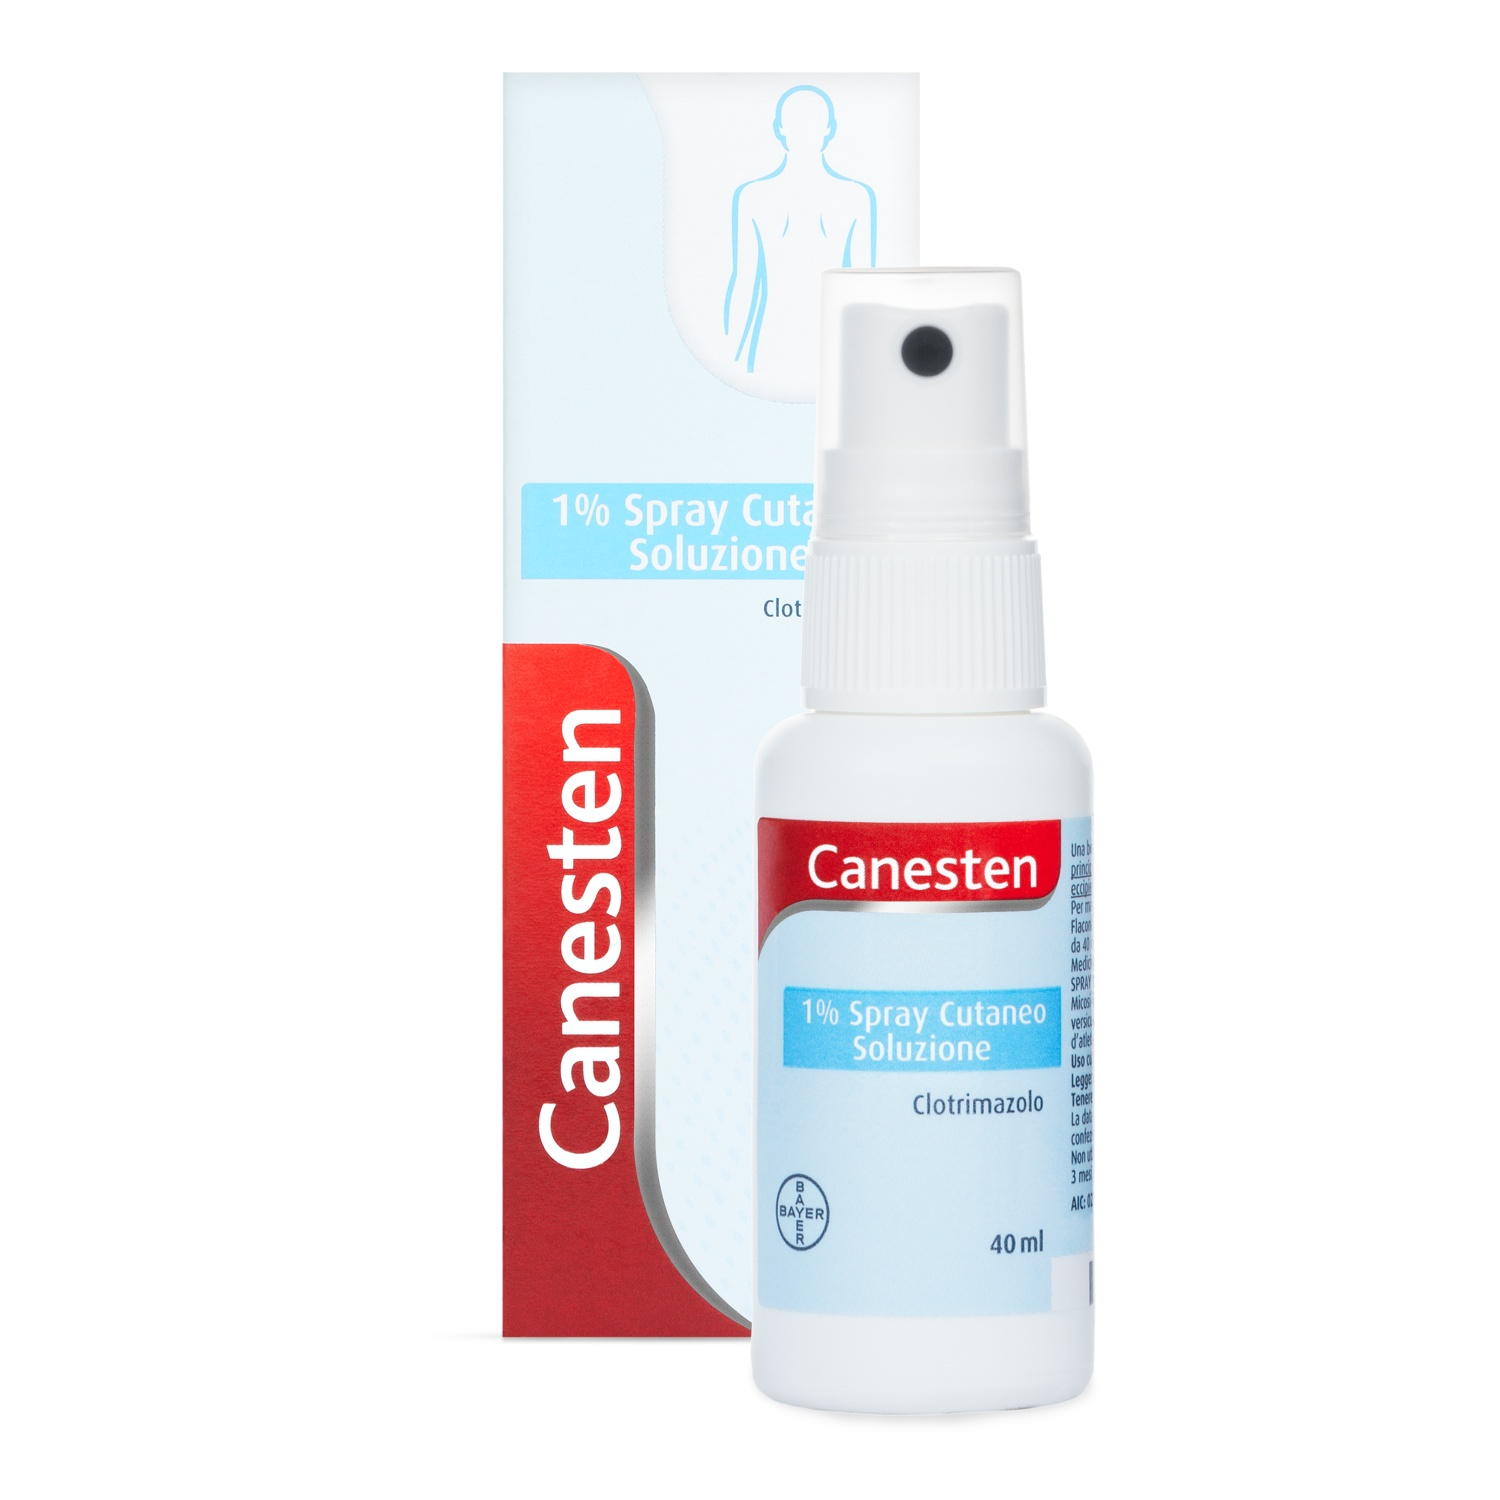 CANESTEN 1% - 1% spray cutaneo soluzione 1 flacone in pe da 40 ml con pompa dosatrice